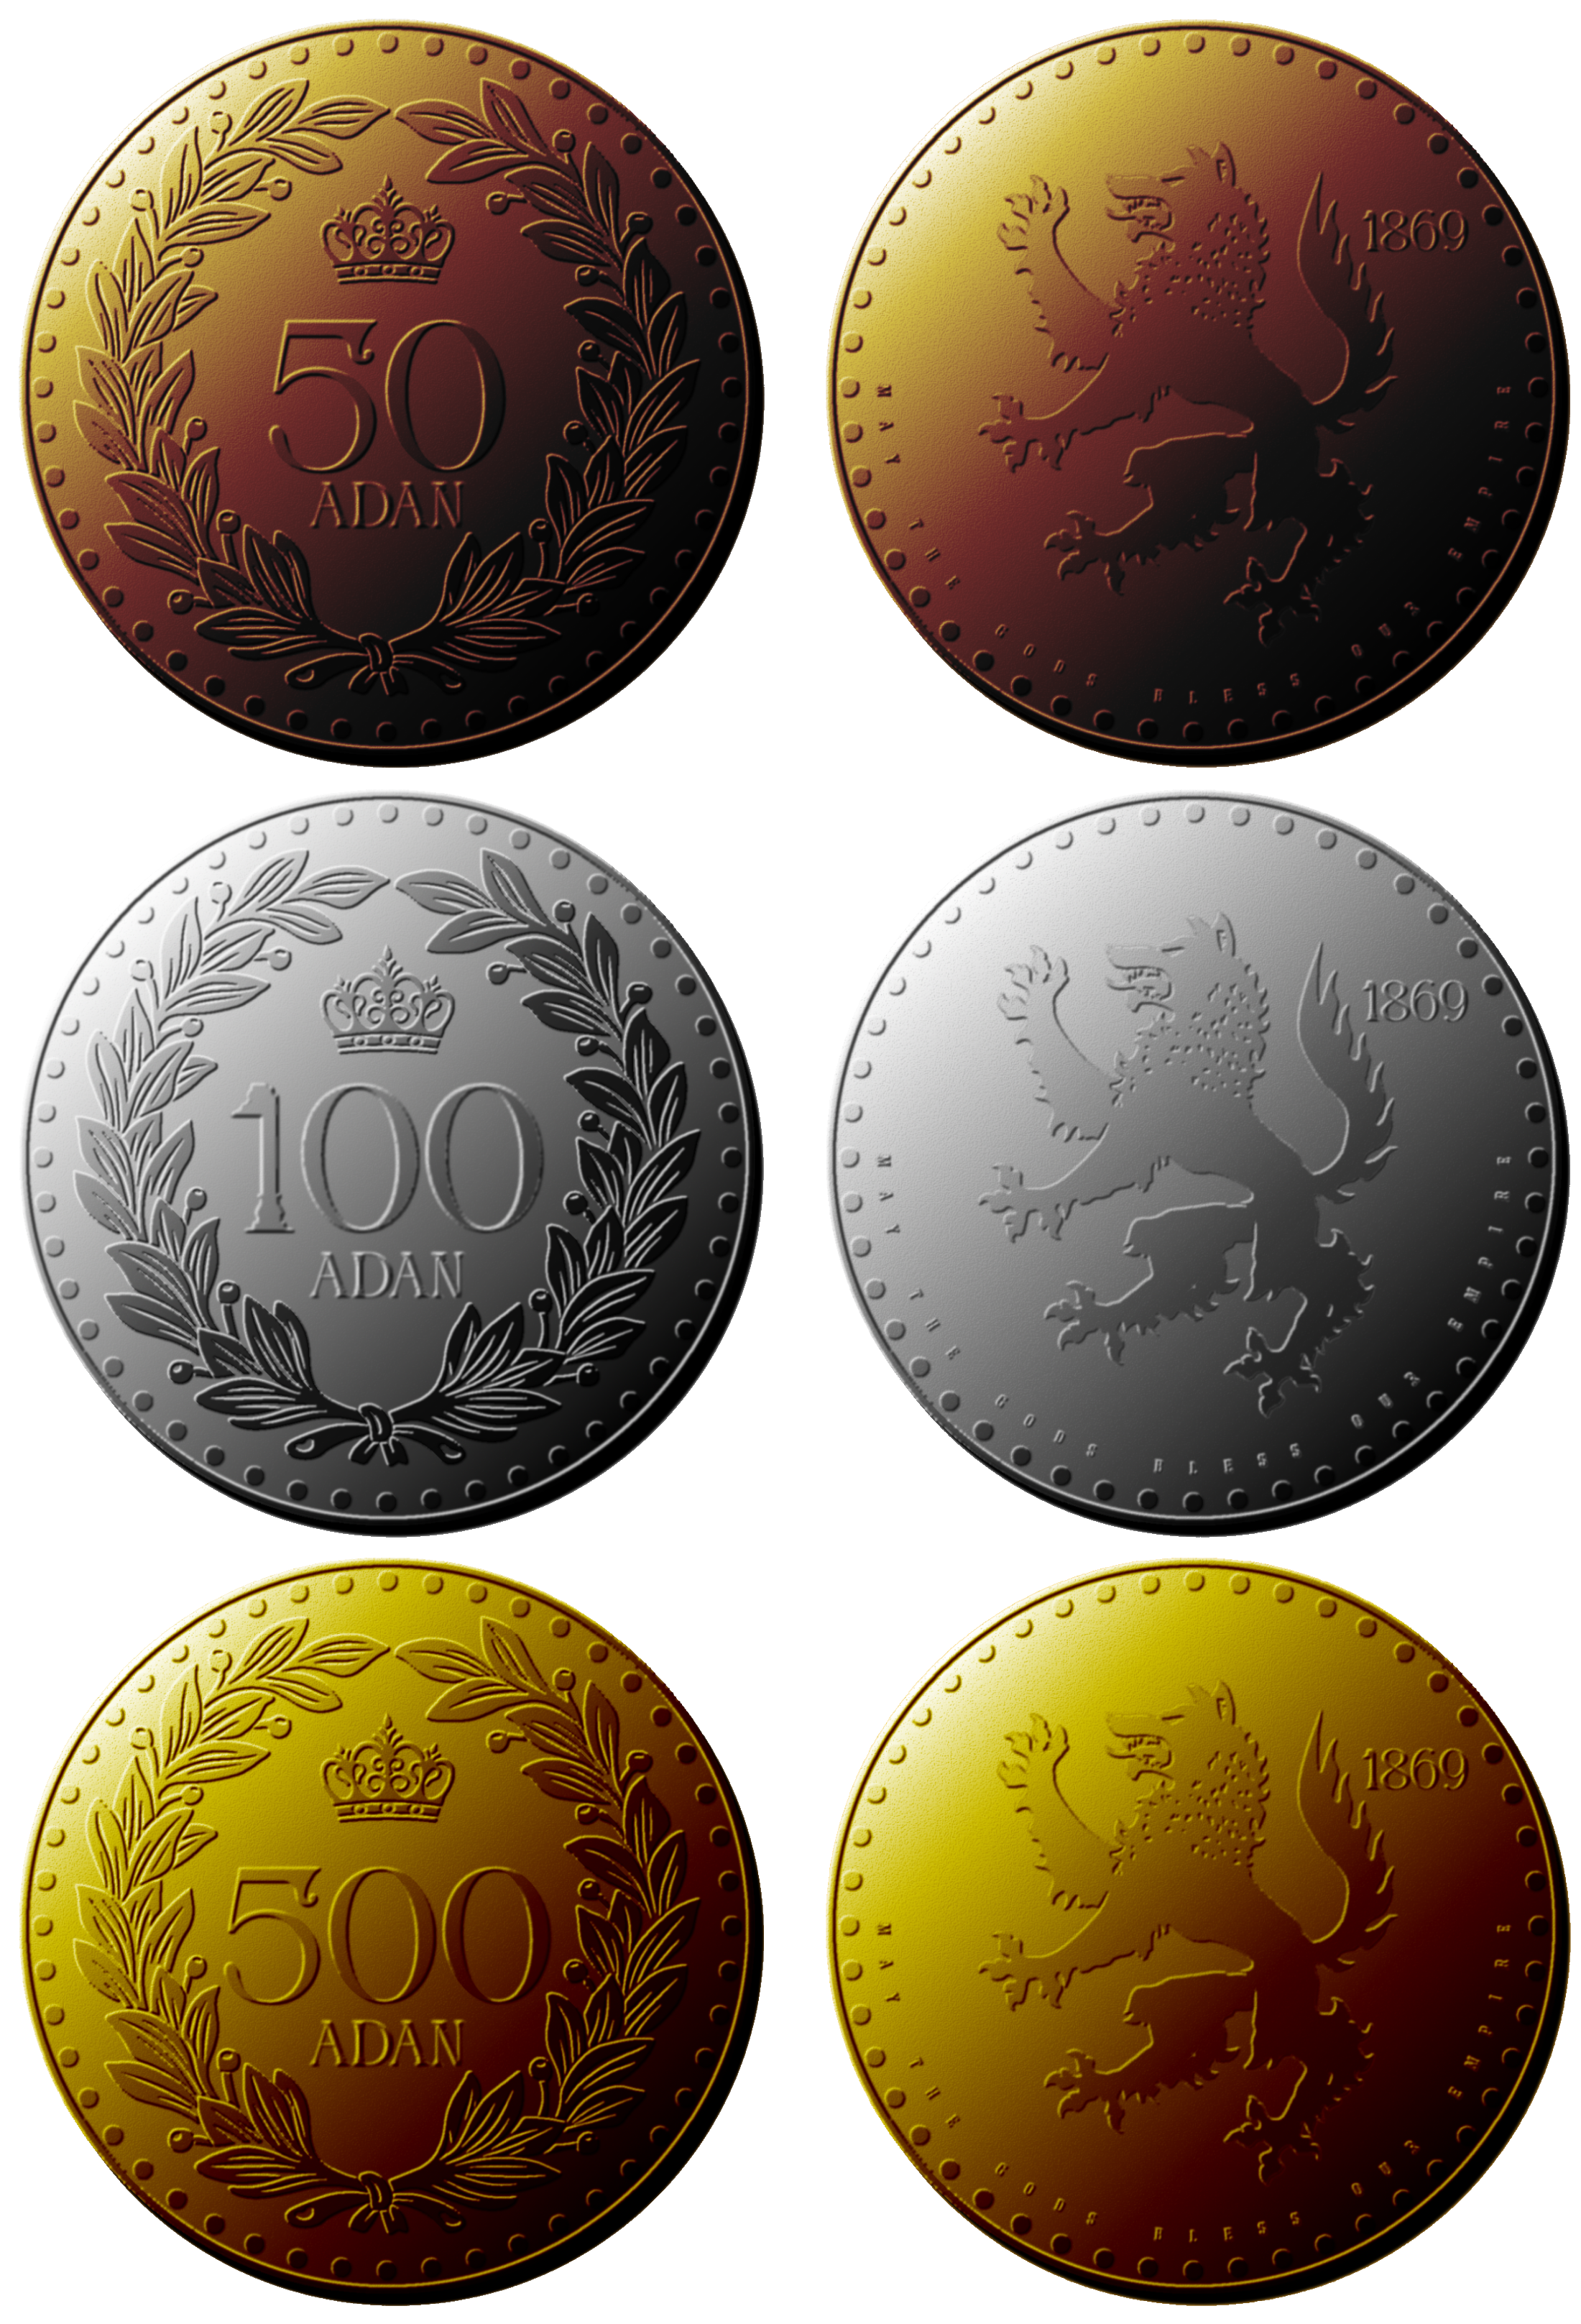 Adan Coins